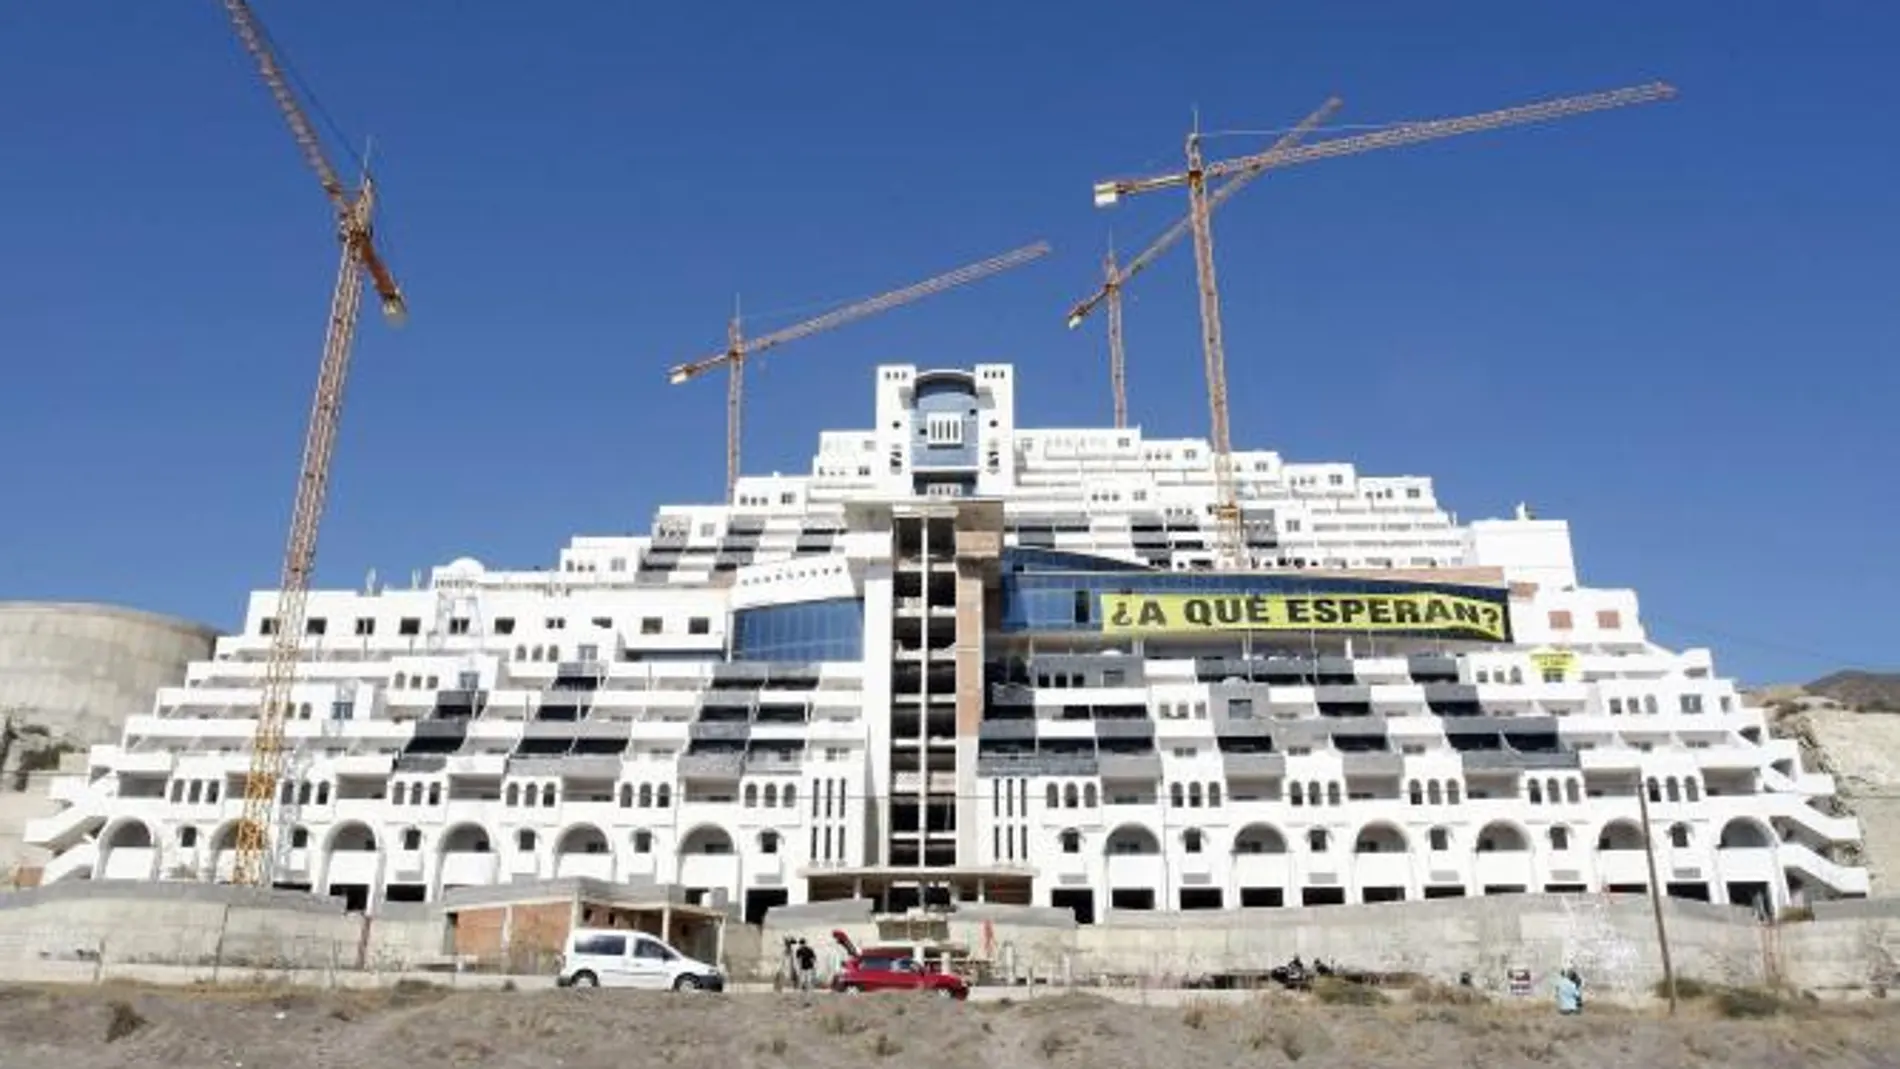 Imagen del hotel del Algarrobico, con una pancarta que colocó Greenpeace